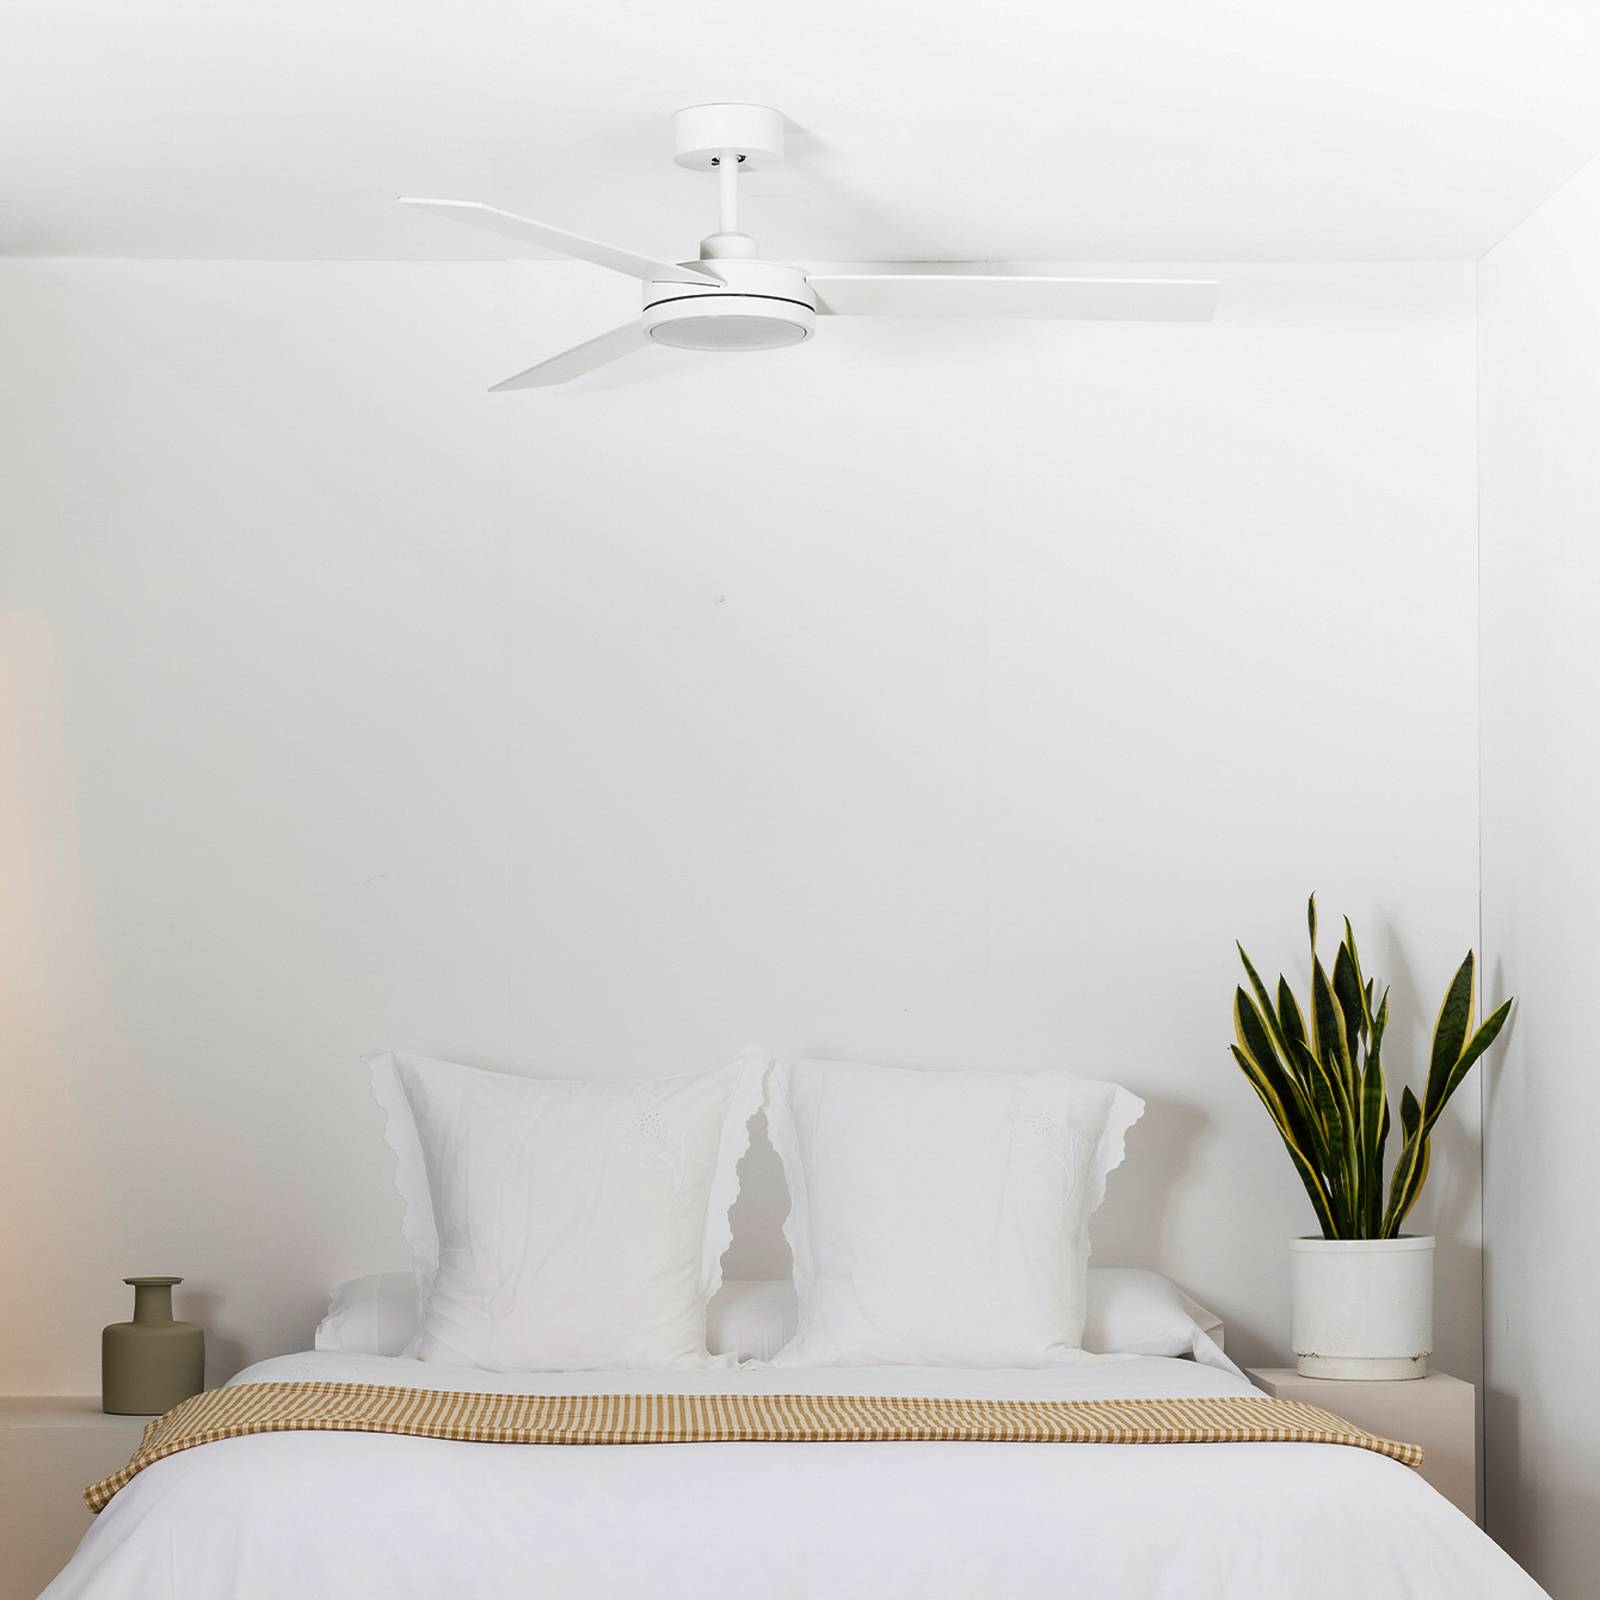 Faro barcelona barth led mennyezeti ventilátor világítással, fehér